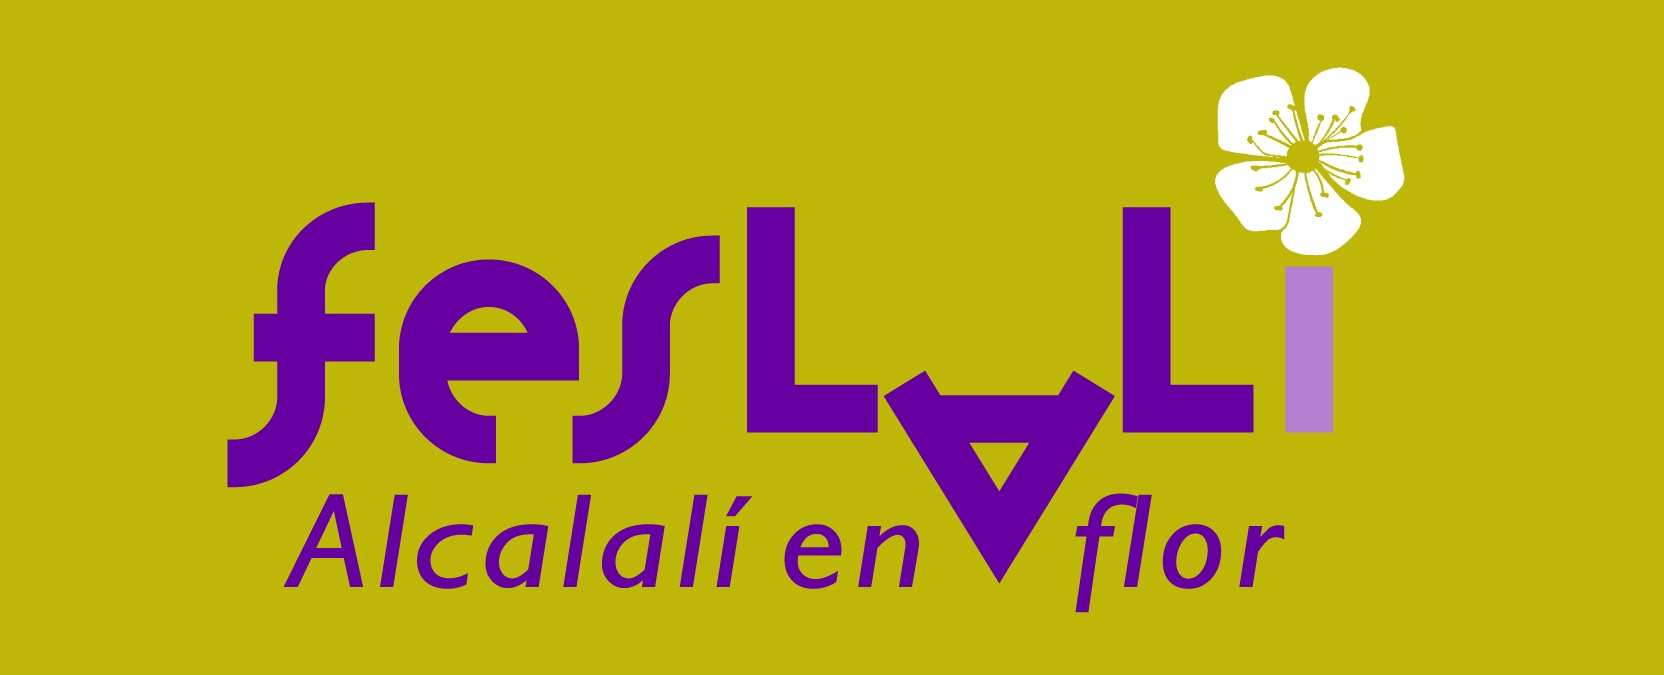 Feslalí "Alcalalí en flor" del 5 al 21 de febrero - Alcalalí Turismo